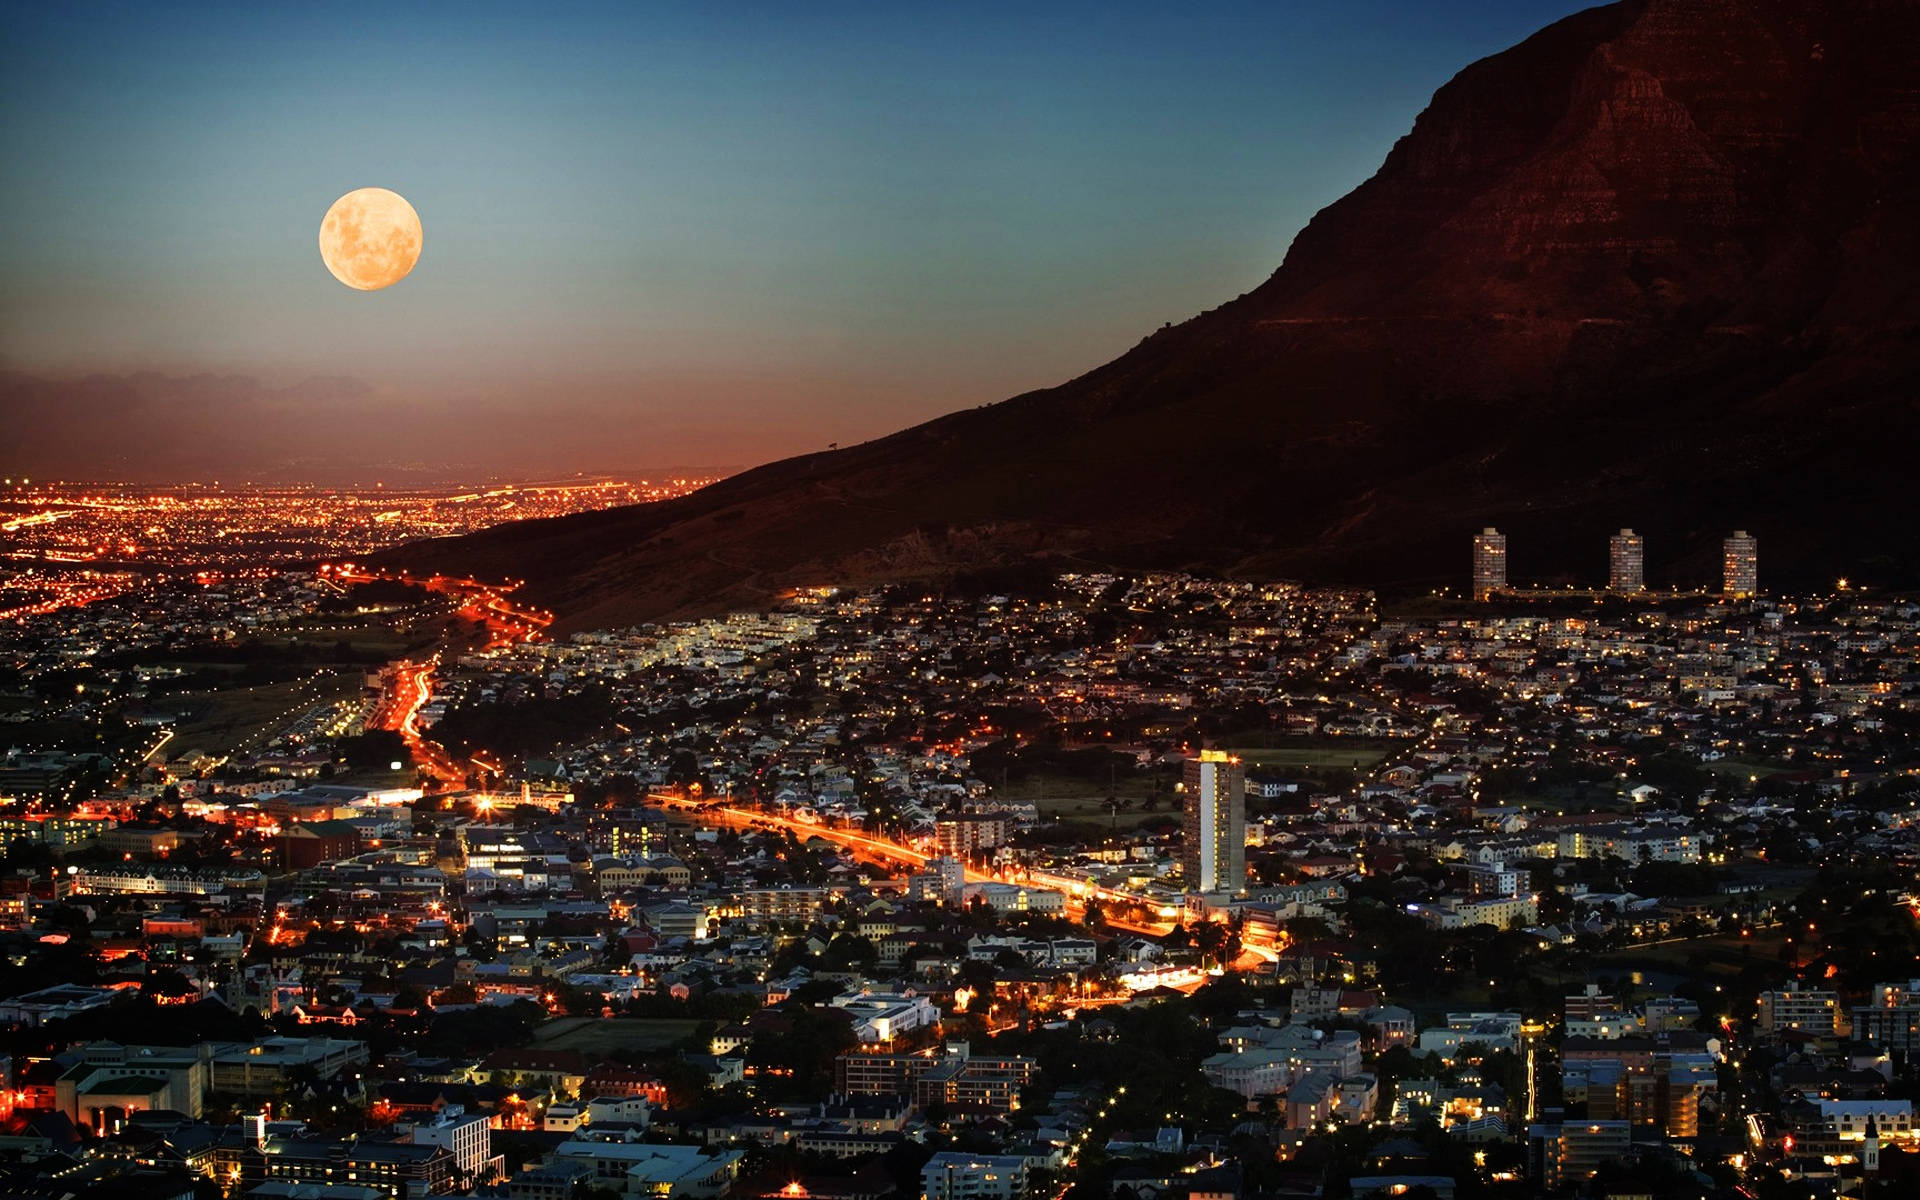 Kapstadtafrika Bei Nacht Wallpaper